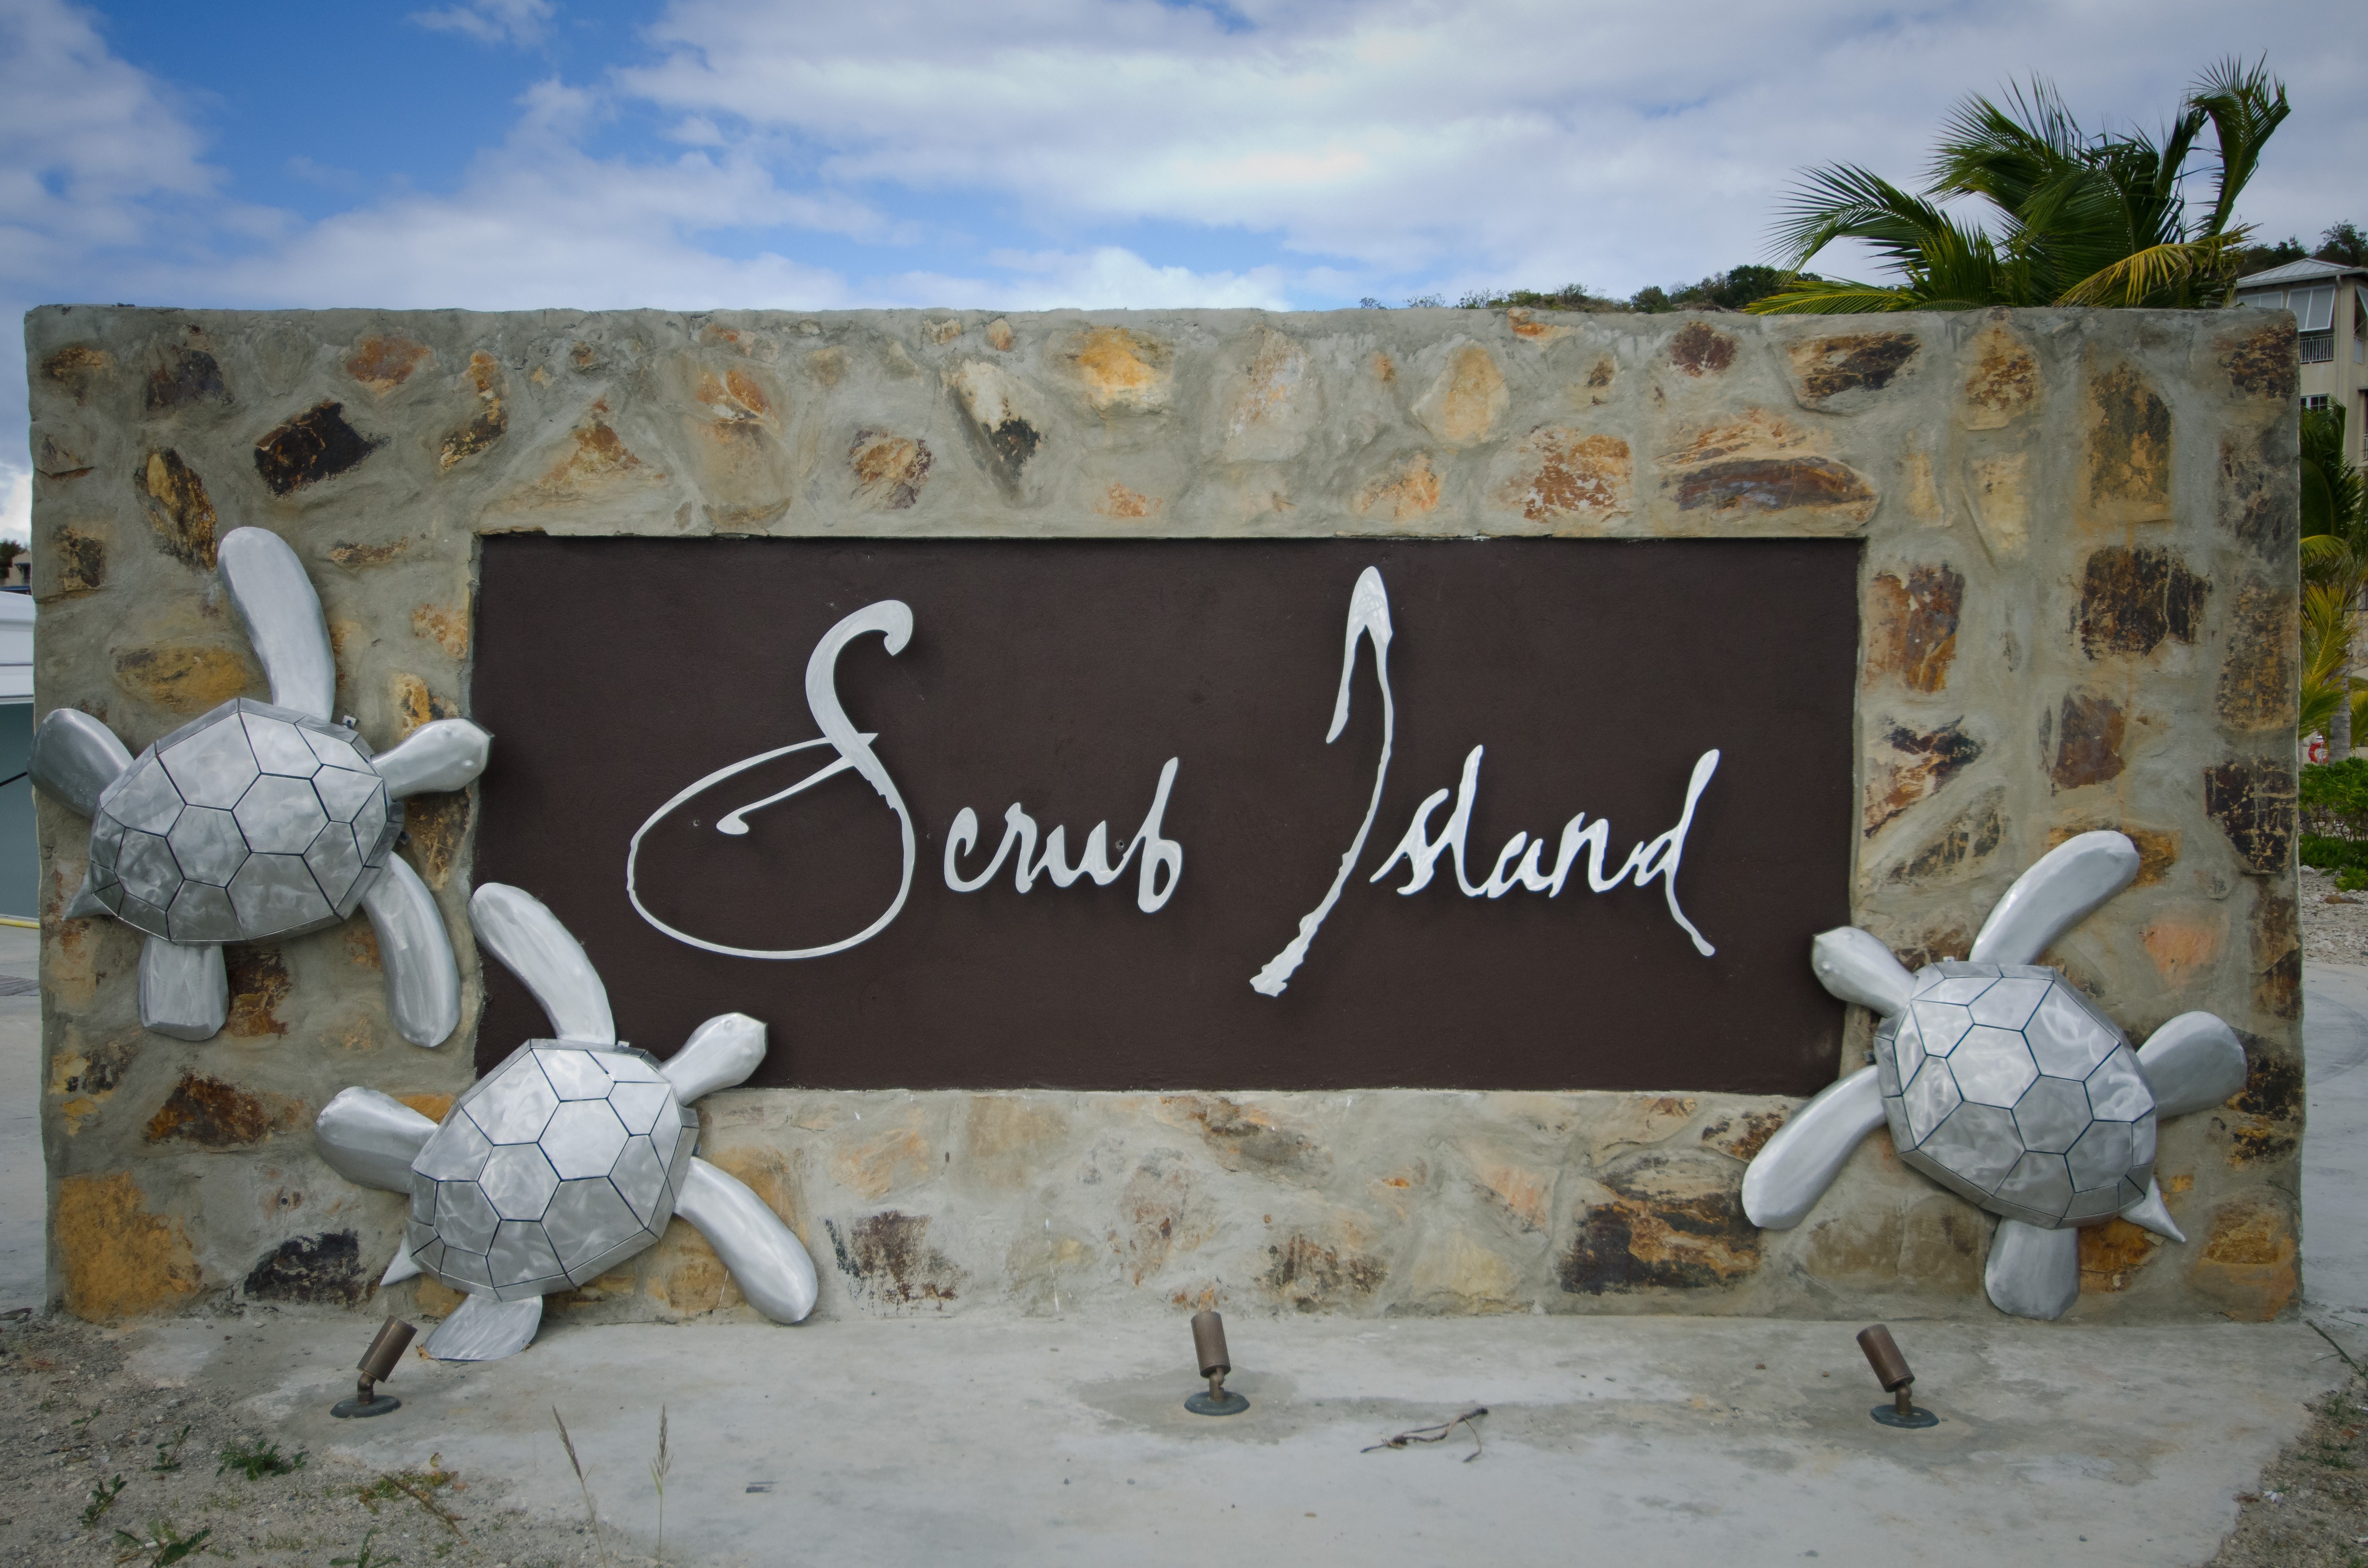 Scrub Island